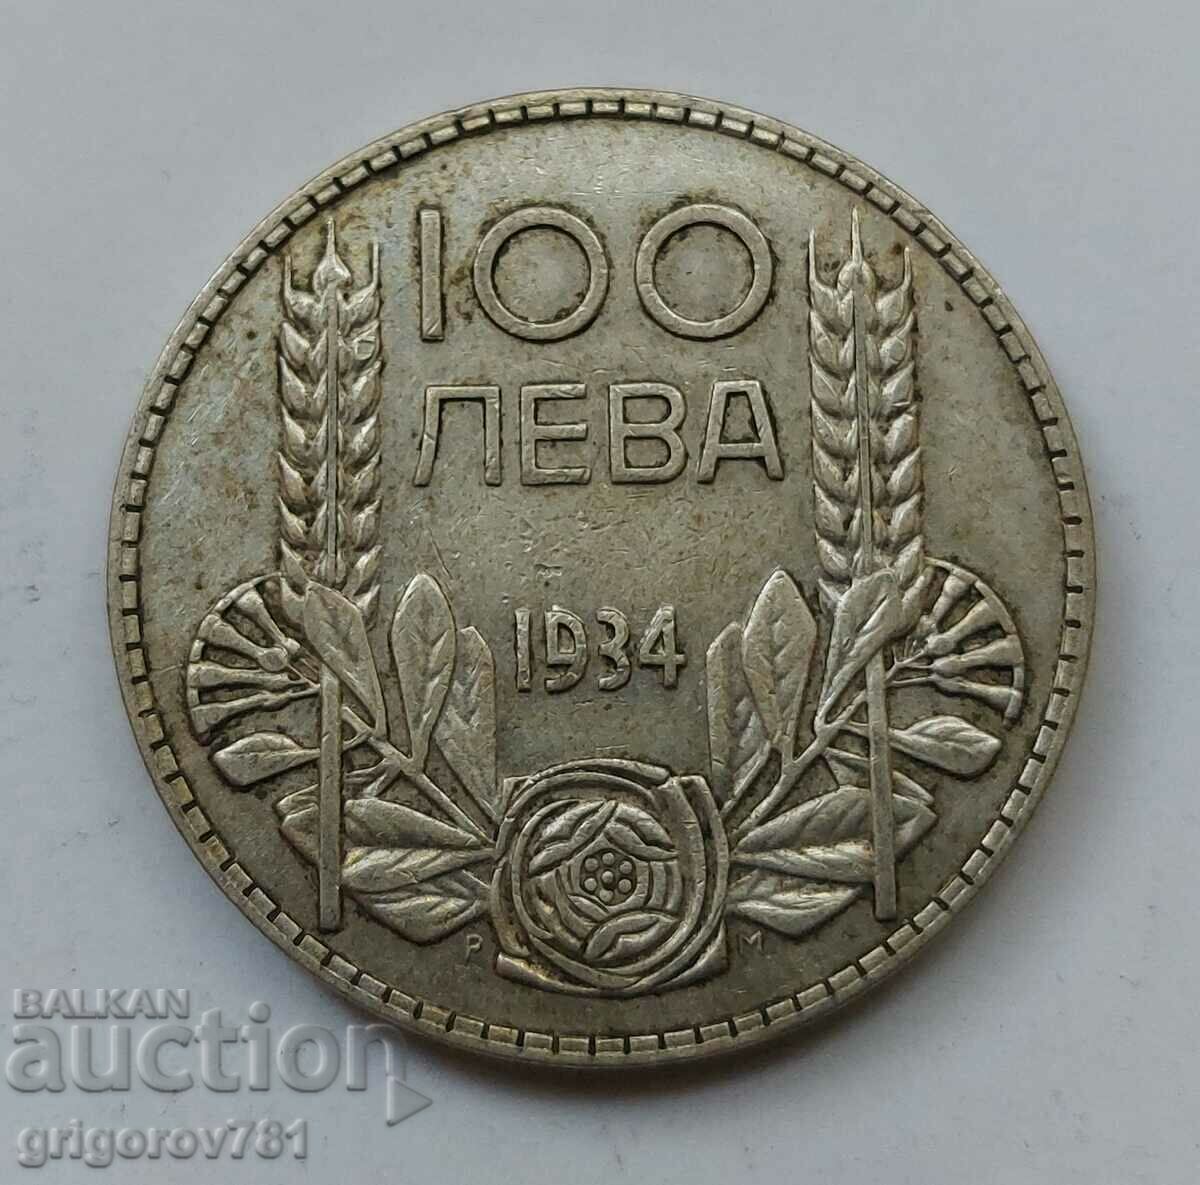 Ασήμι 100 λέβα Βουλγαρία 1934 - ασημένιο νόμισμα #77